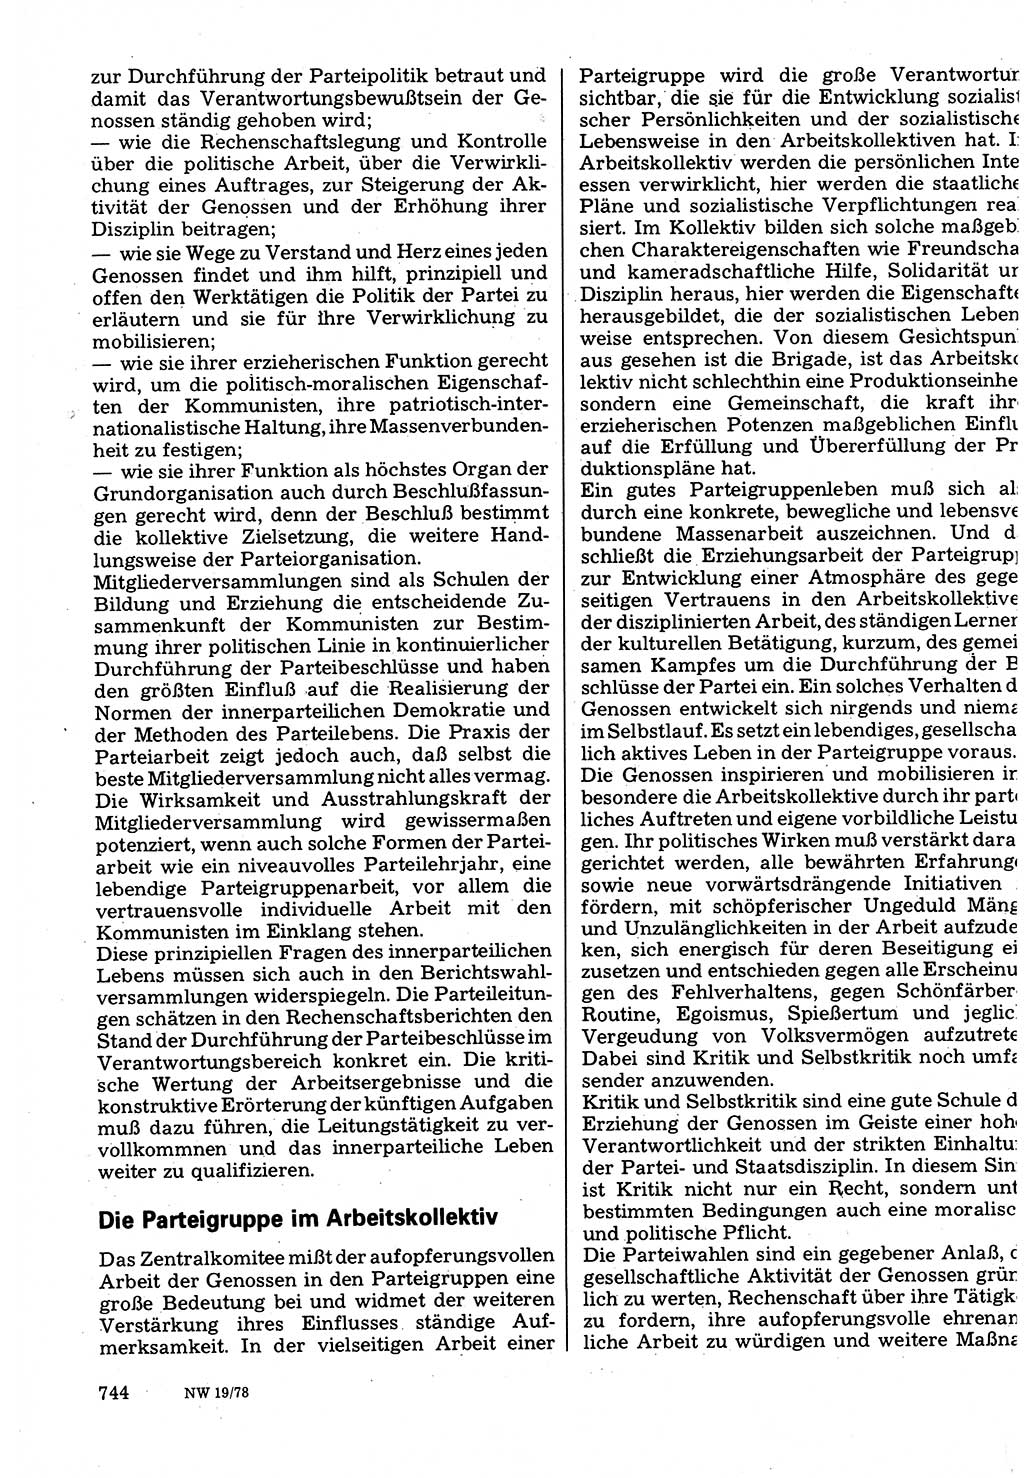 Neuer Weg (NW), Organ des Zentralkomitees (ZK) der SED (Sozialistische Einheitspartei Deutschlands) für Fragen des Parteilebens, 33. Jahrgang [Deutsche Demokratische Republik (DDR)] 1978, Seite 744 (NW ZK SED DDR 1978, S. 744)